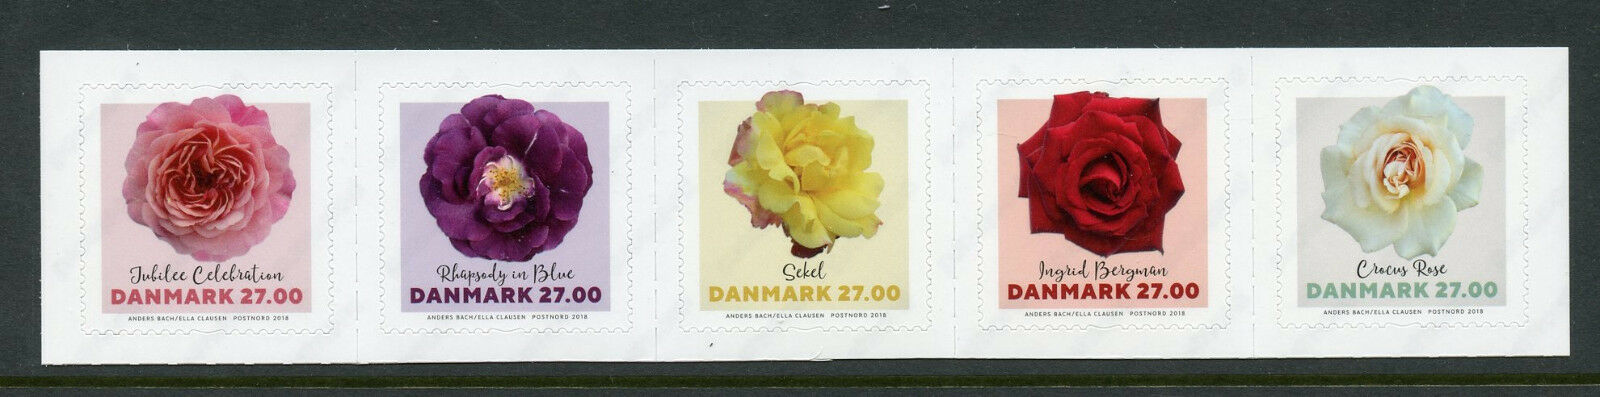 Denmark 2018 MNH Roses Ingrid Bergman Crocus Rose 5v S/A Strip Flowers Stamps